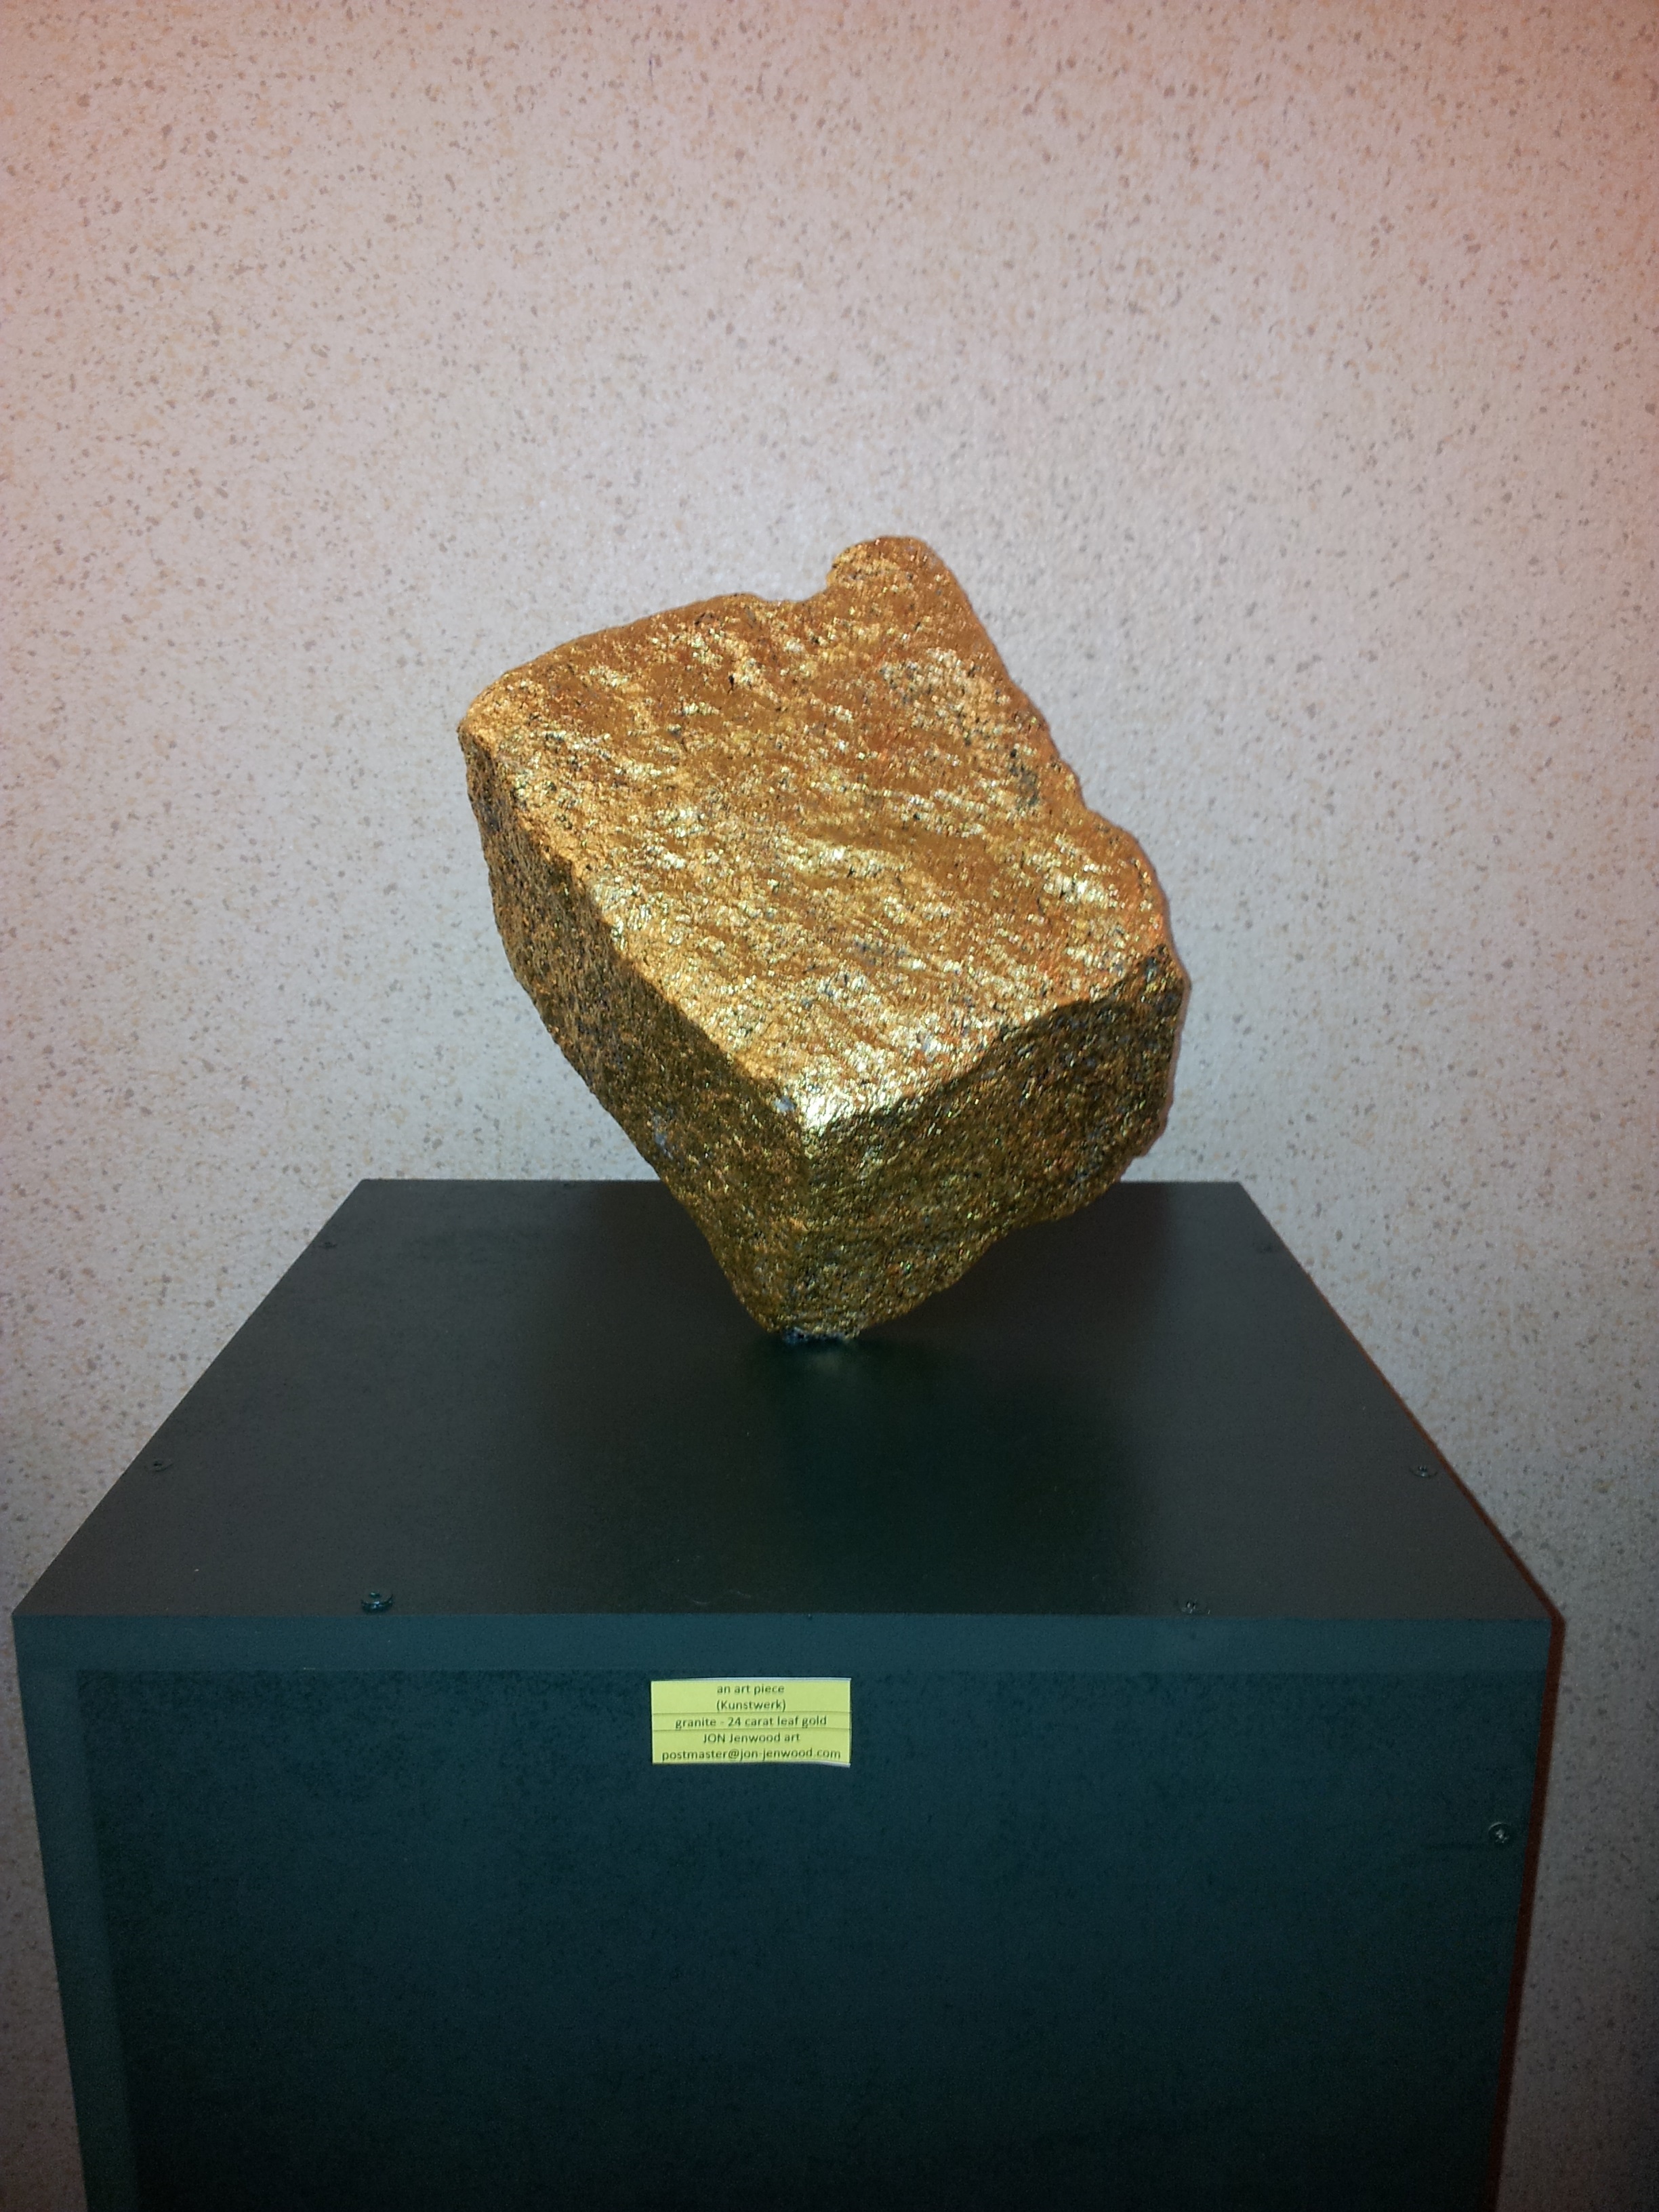 an art piece (Kunstwerk)
granite - 24 carat leaf gold